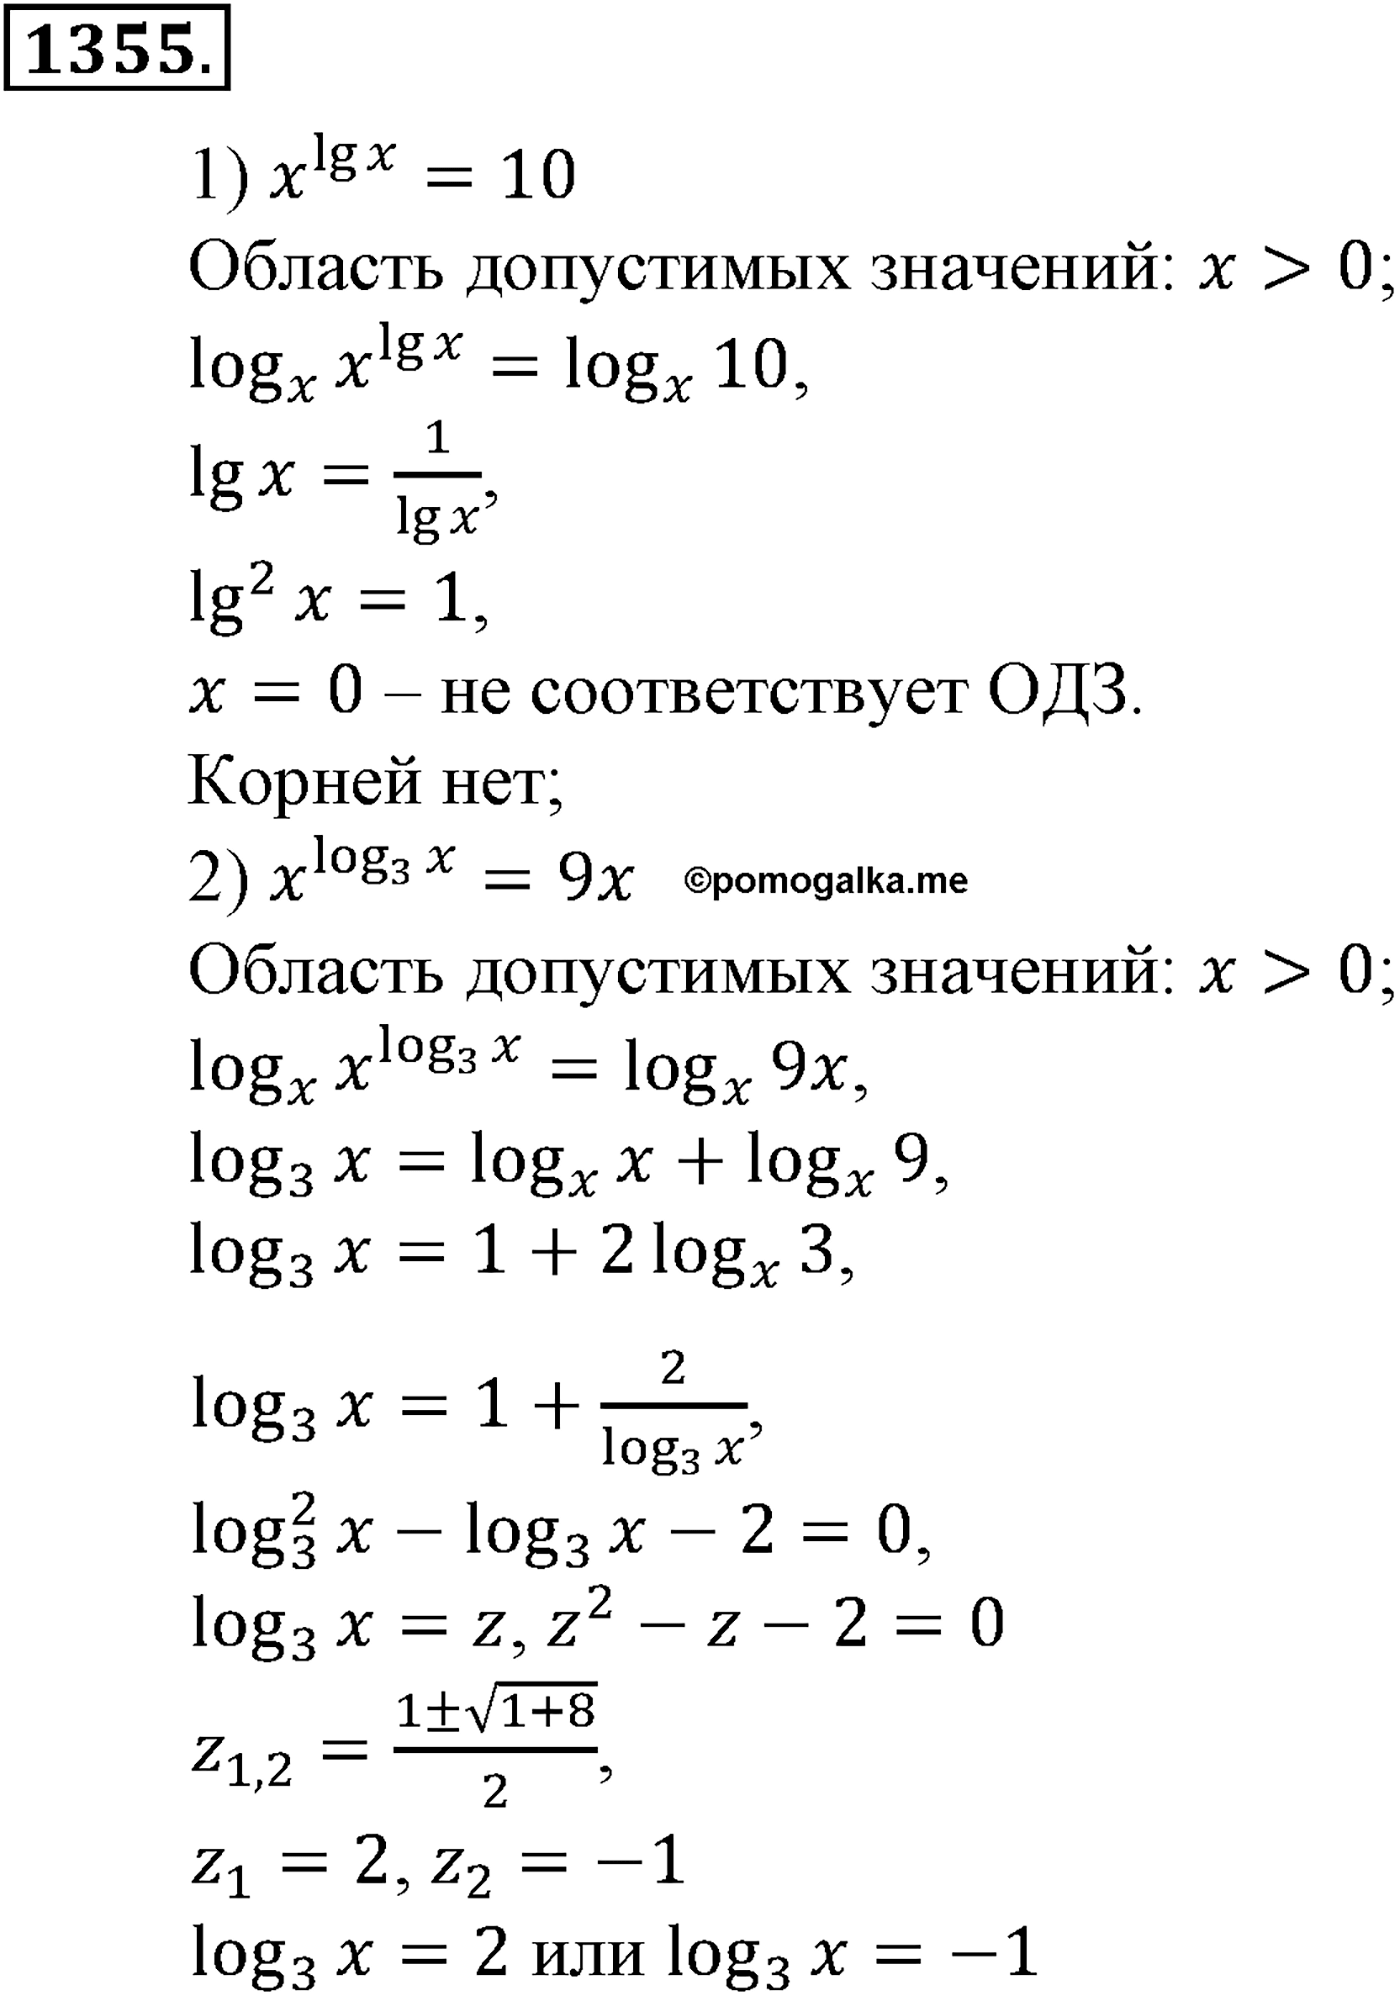 разбор задачи №1355 по алгебре за 10-11 класс из учебника Алимова, Колягина